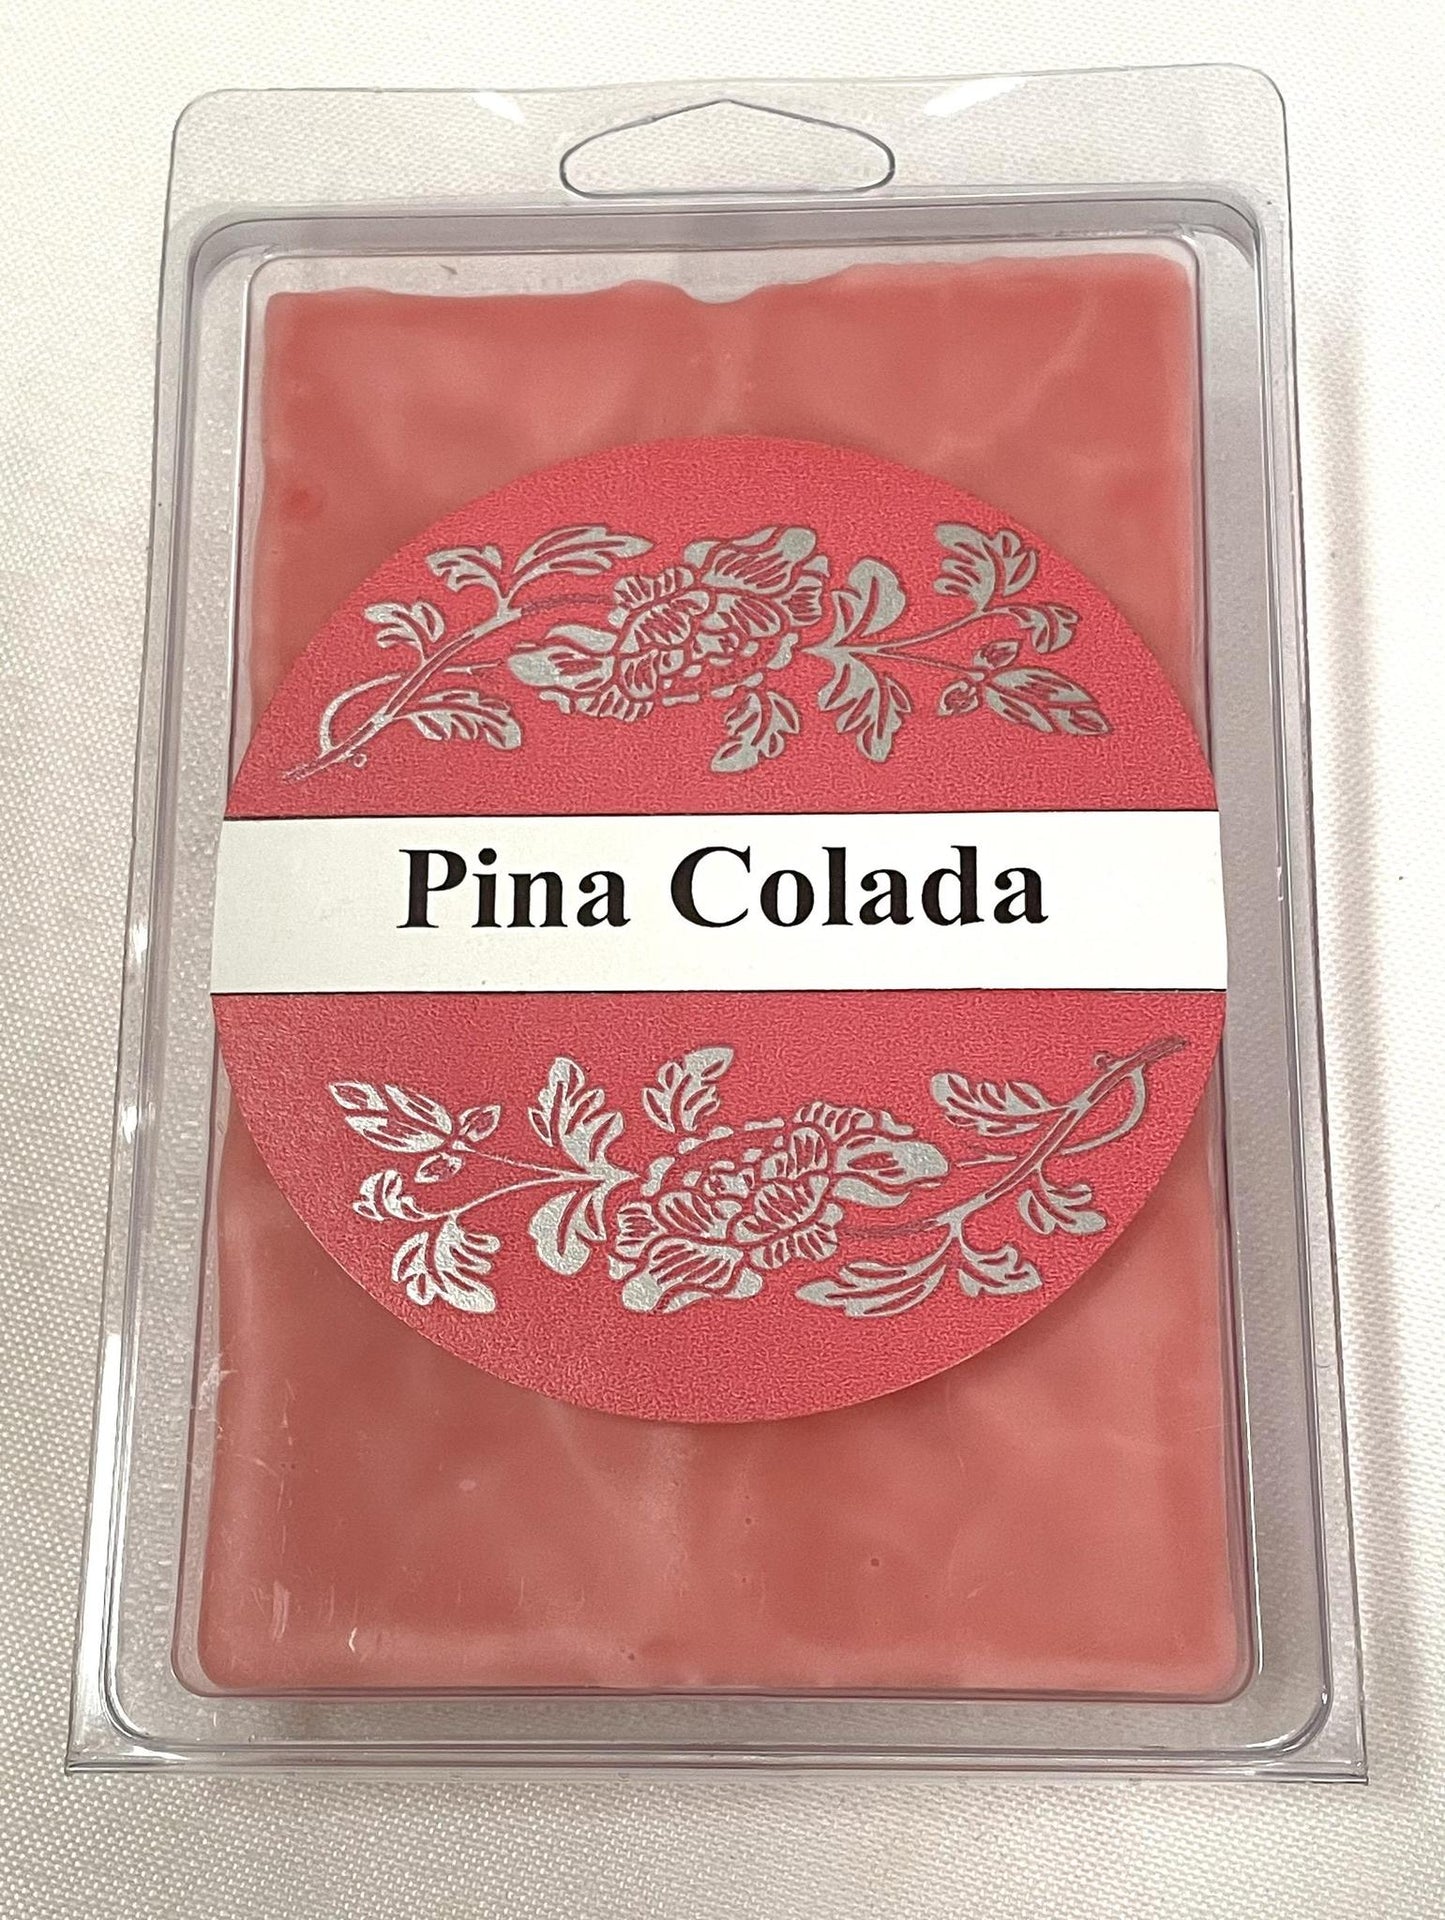 Square Candles Tarts - Pina Colada